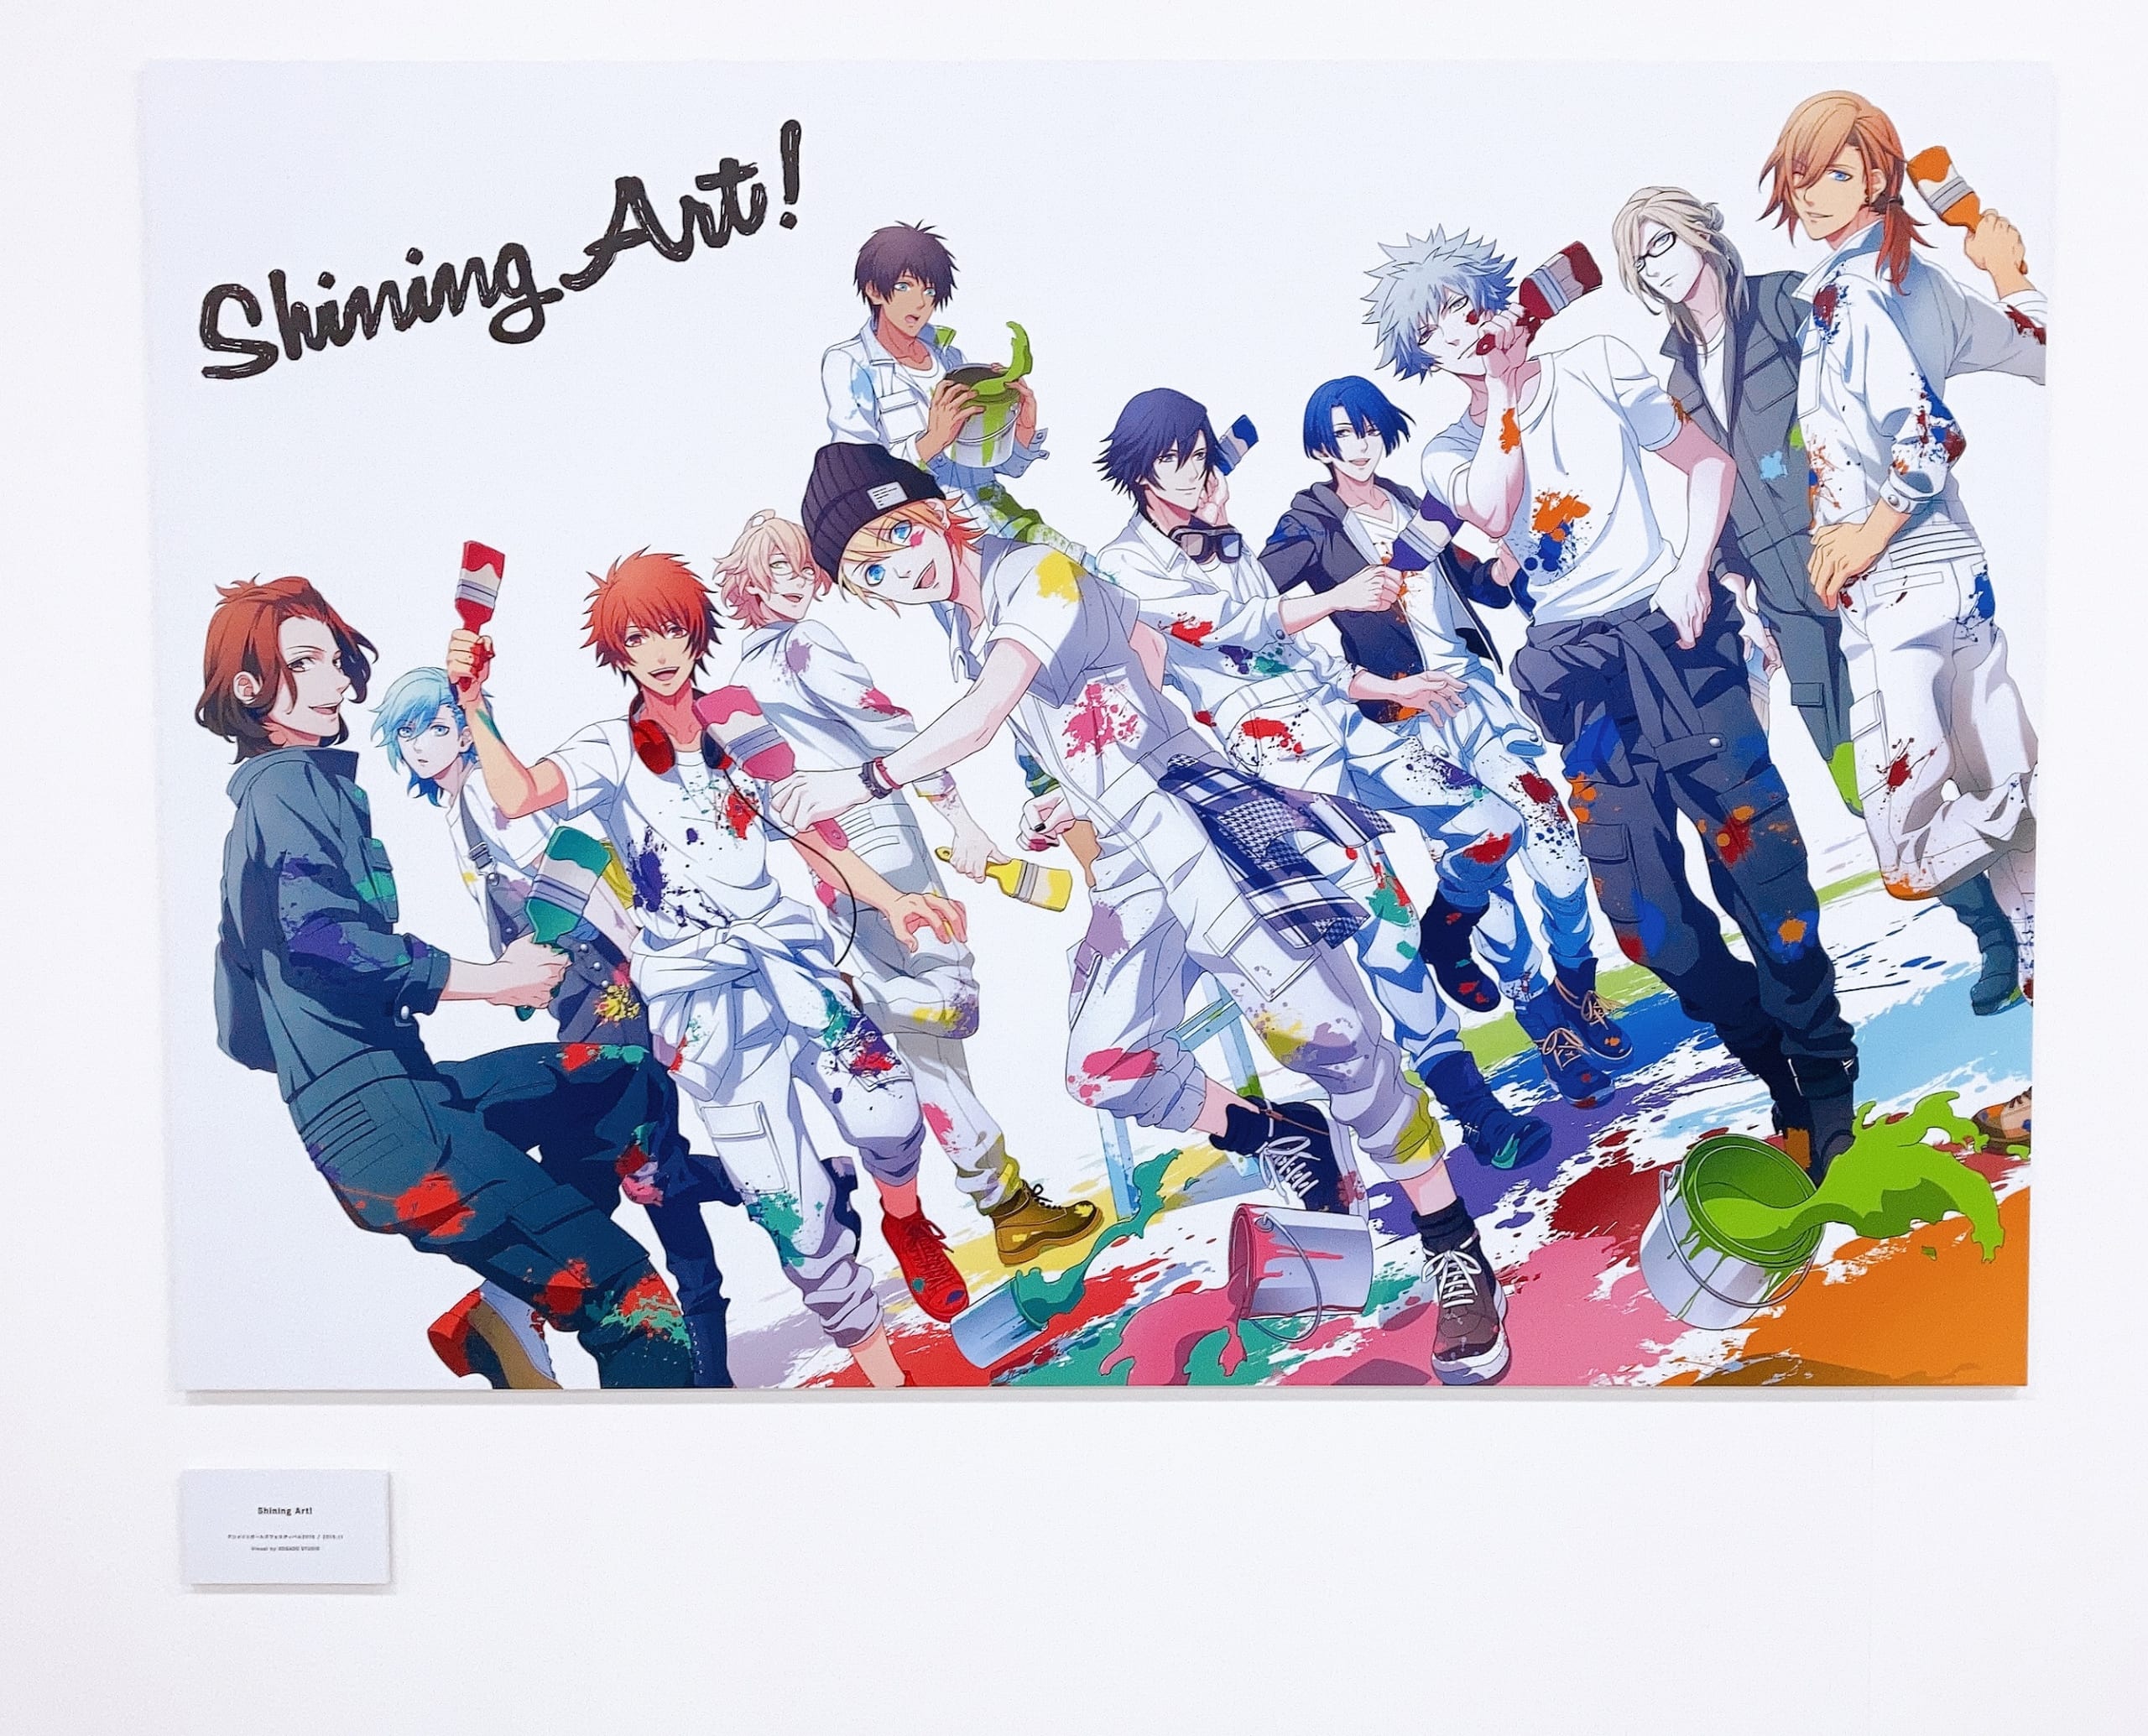 「UTA☆PRI EXPO」③Shining Art!